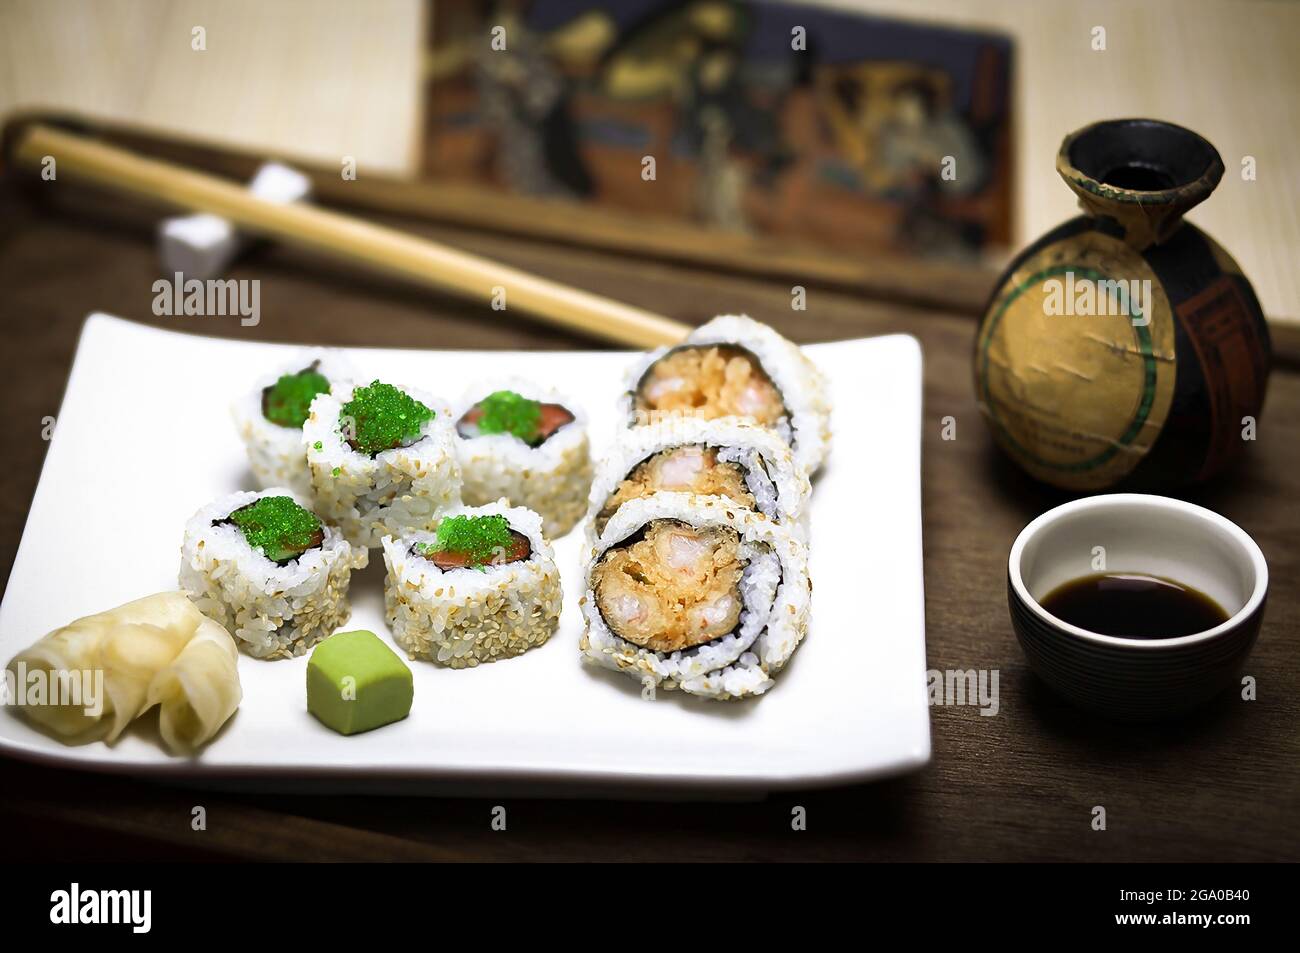 Une élégante assiette blanche avec des petits pains en tranches de sushis maki frais et sains faits de riz, de saumon cru et de thon, de caviar vert, de crevettes et de nori Banque D'Images